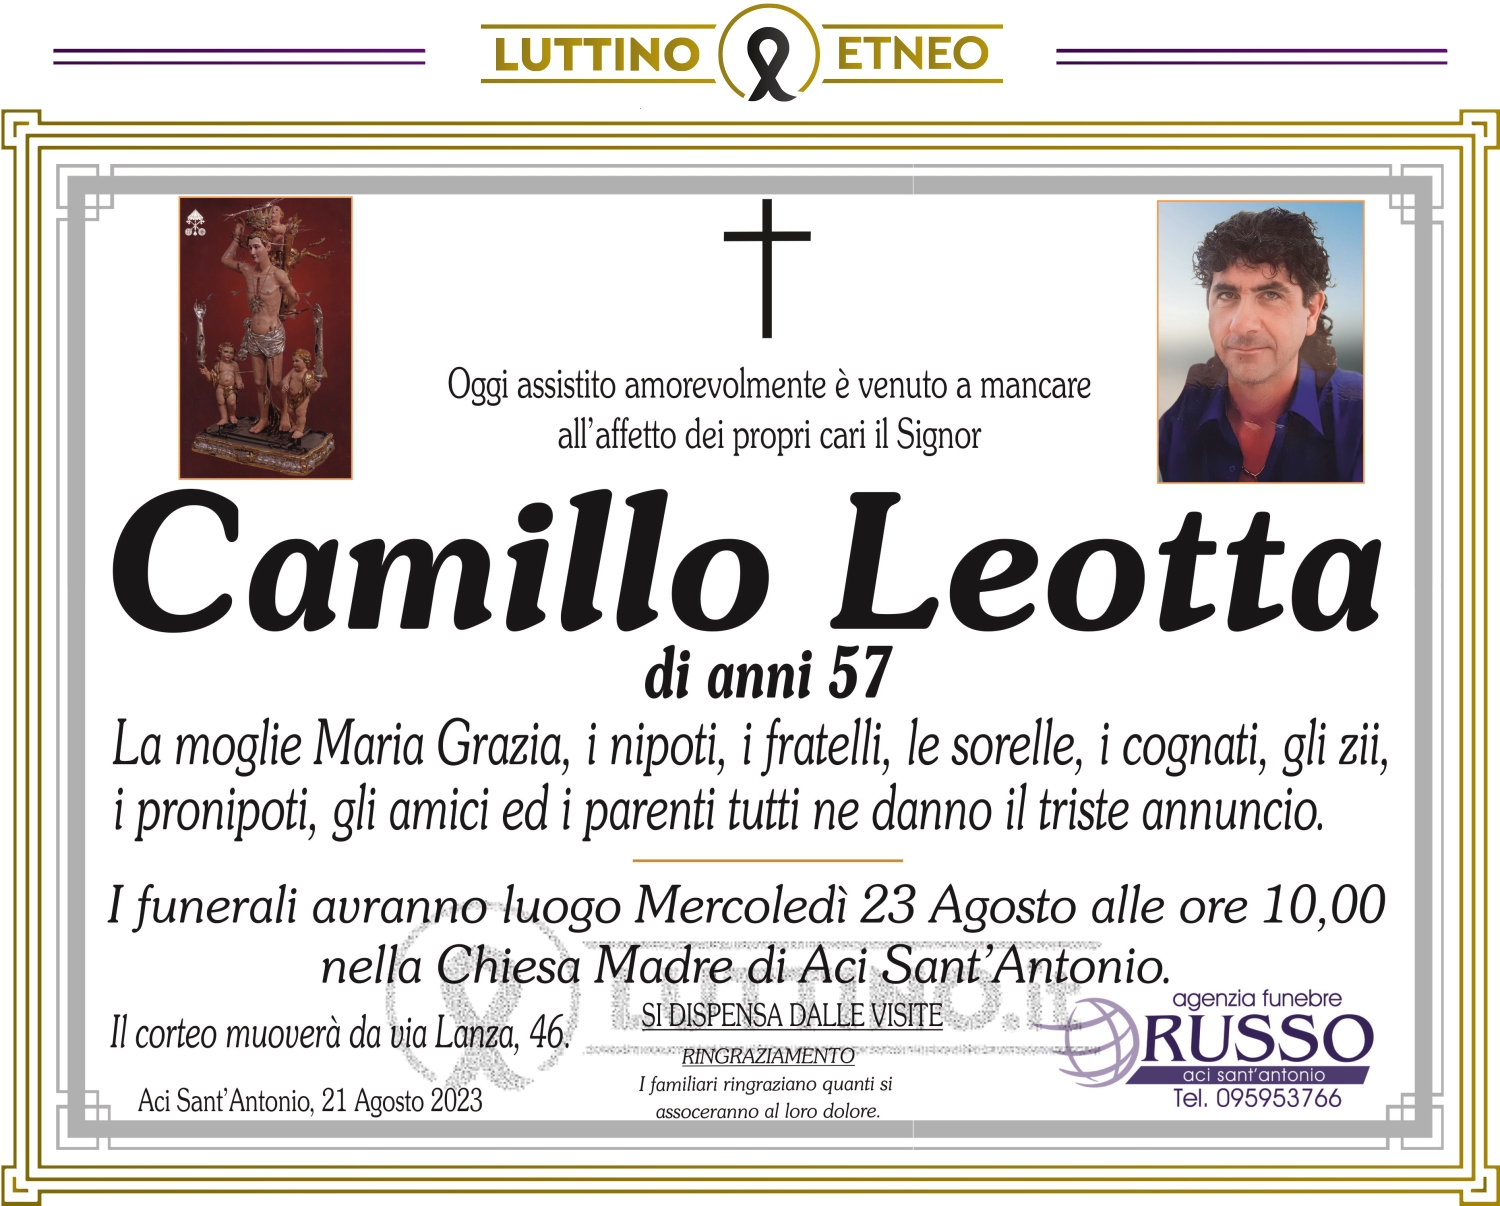 Camillo Leotta